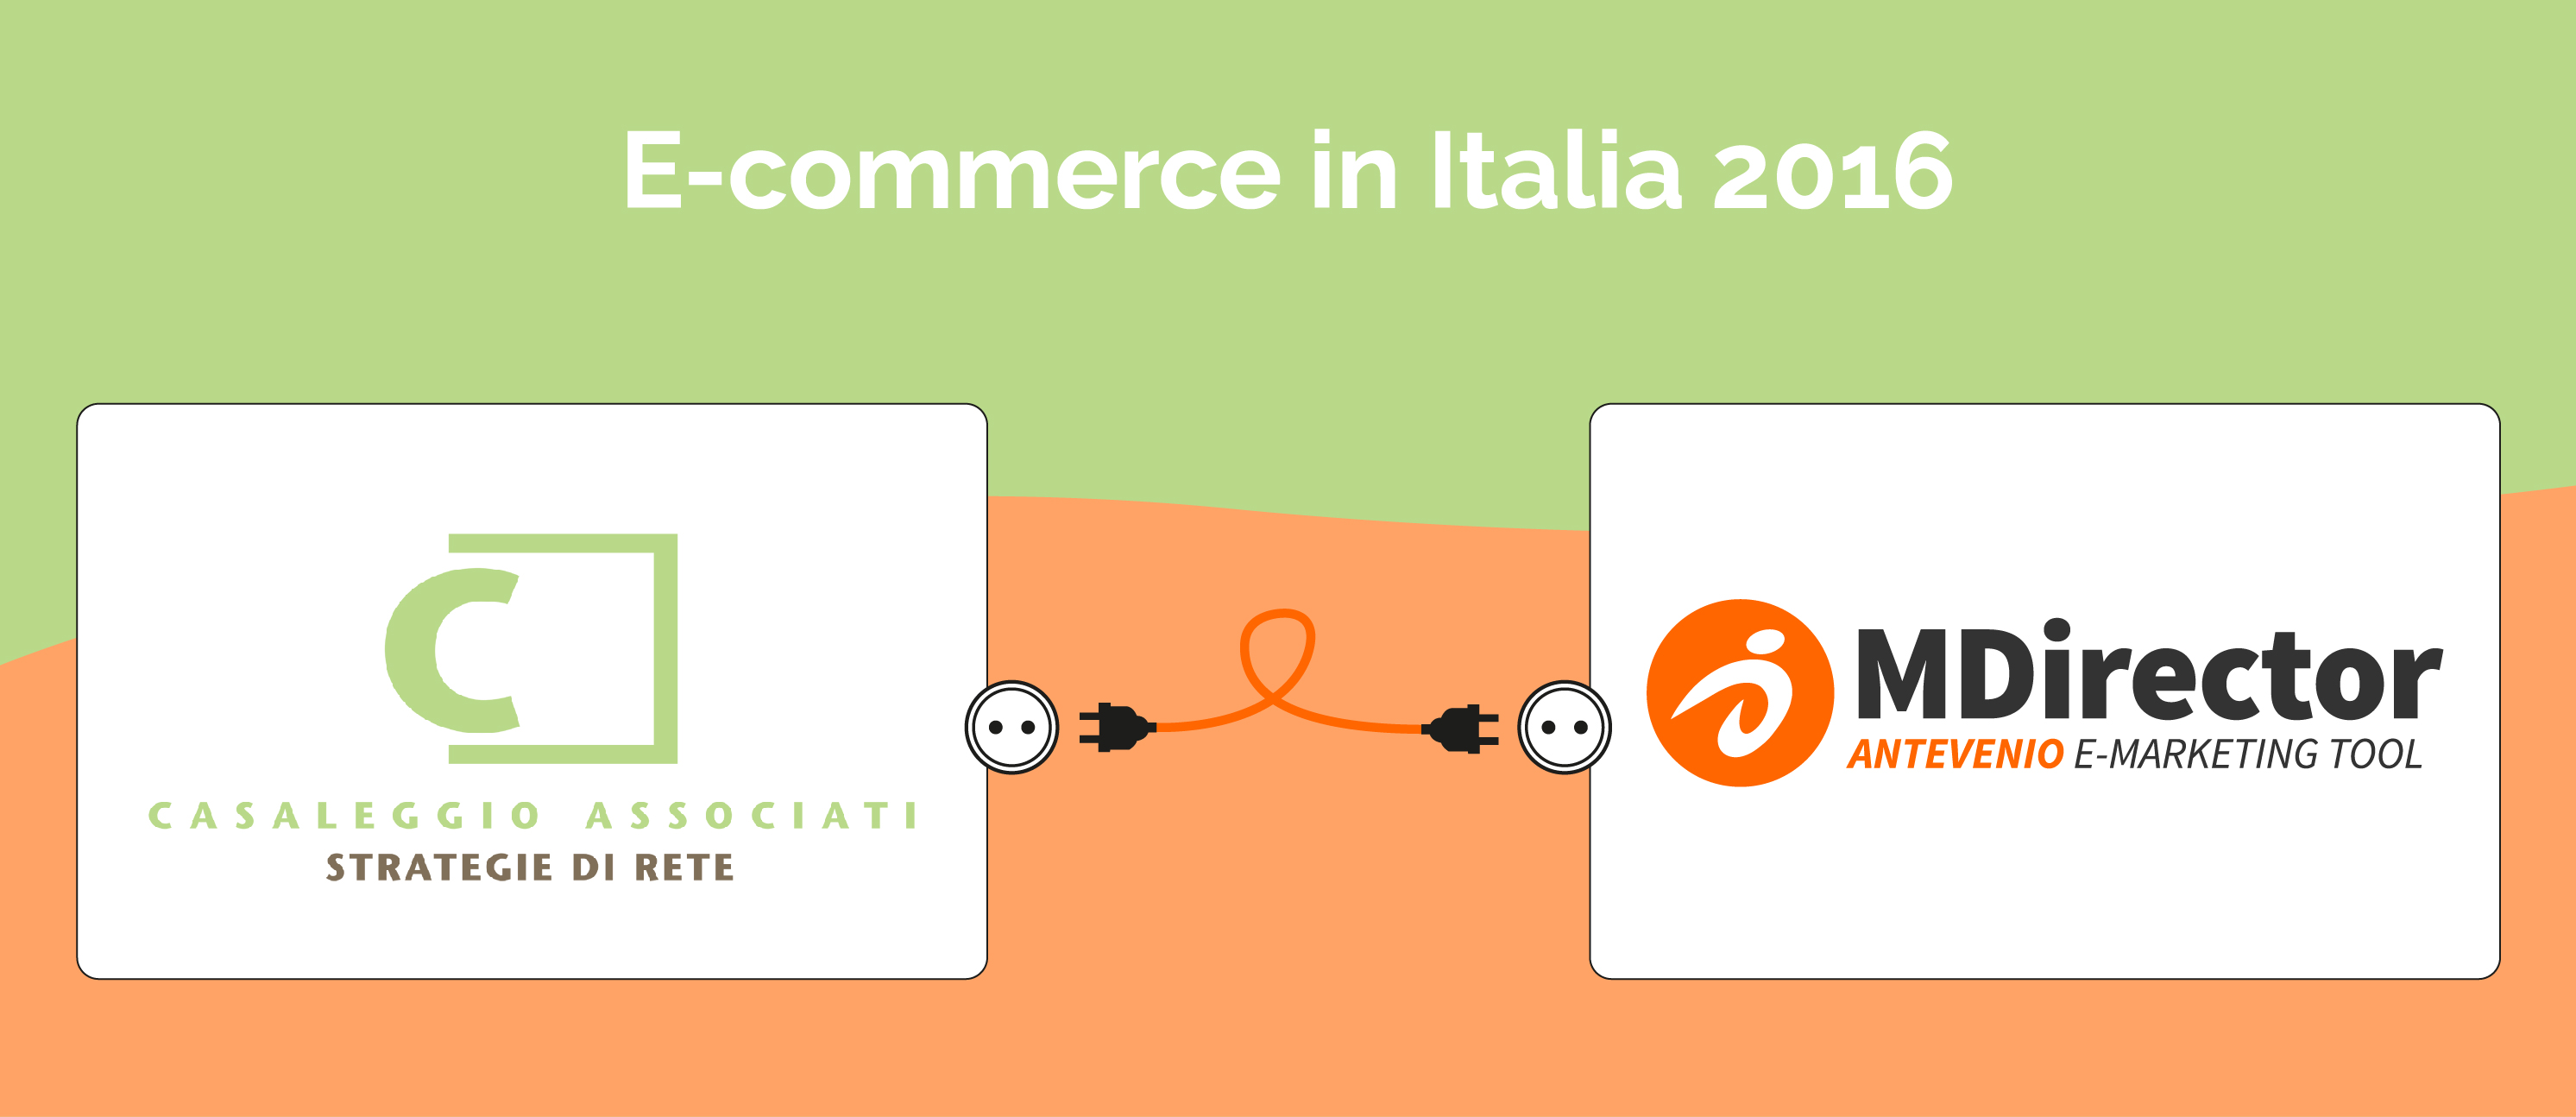 MDirector sponsor ufficiali del convegno E-commerce in Italia